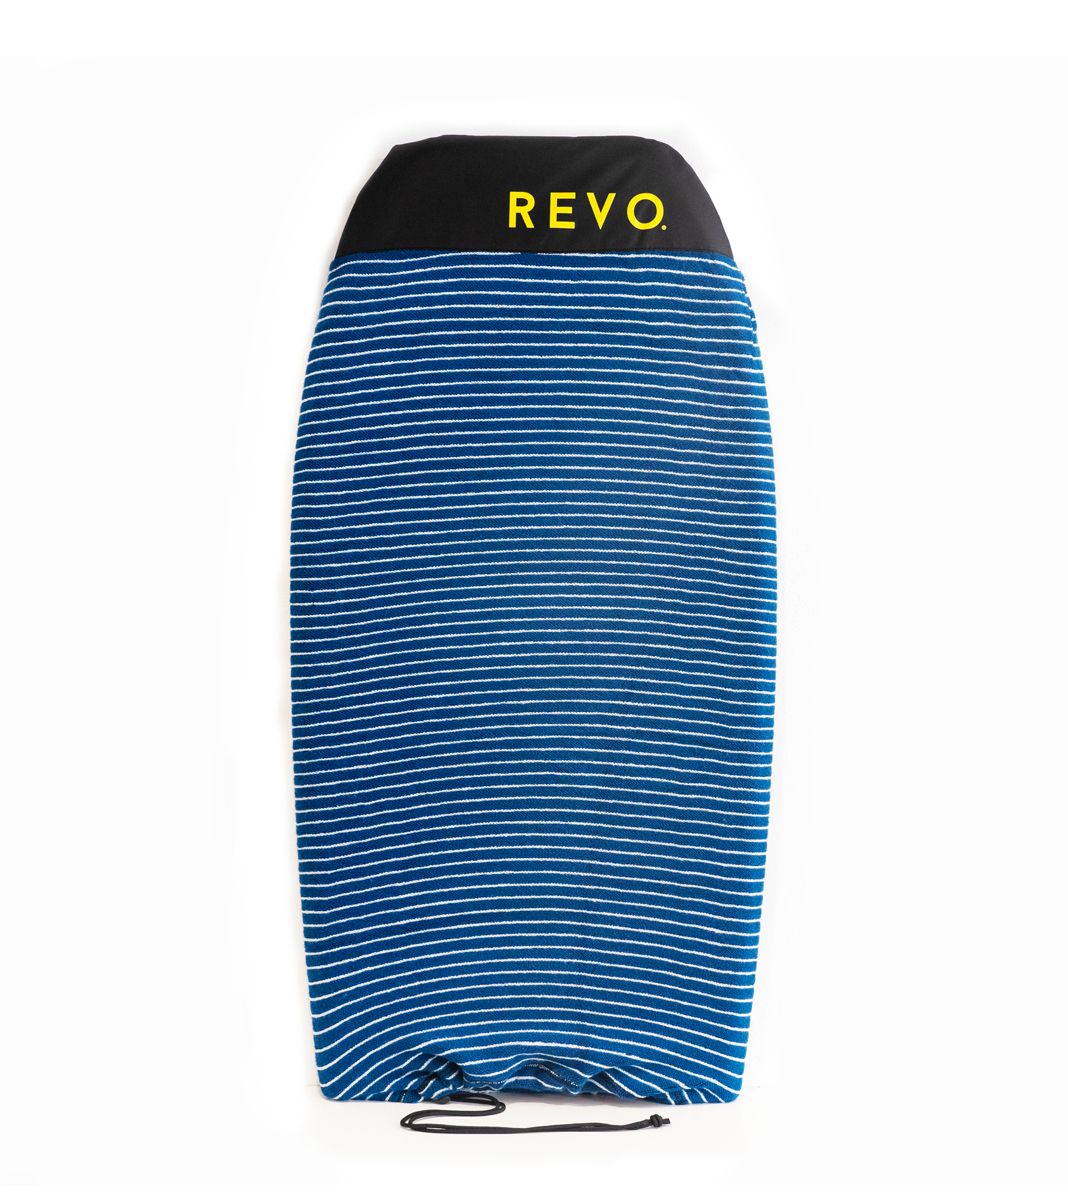 REVO STRETCH SOX - 1 T. - NAVY/WHITE